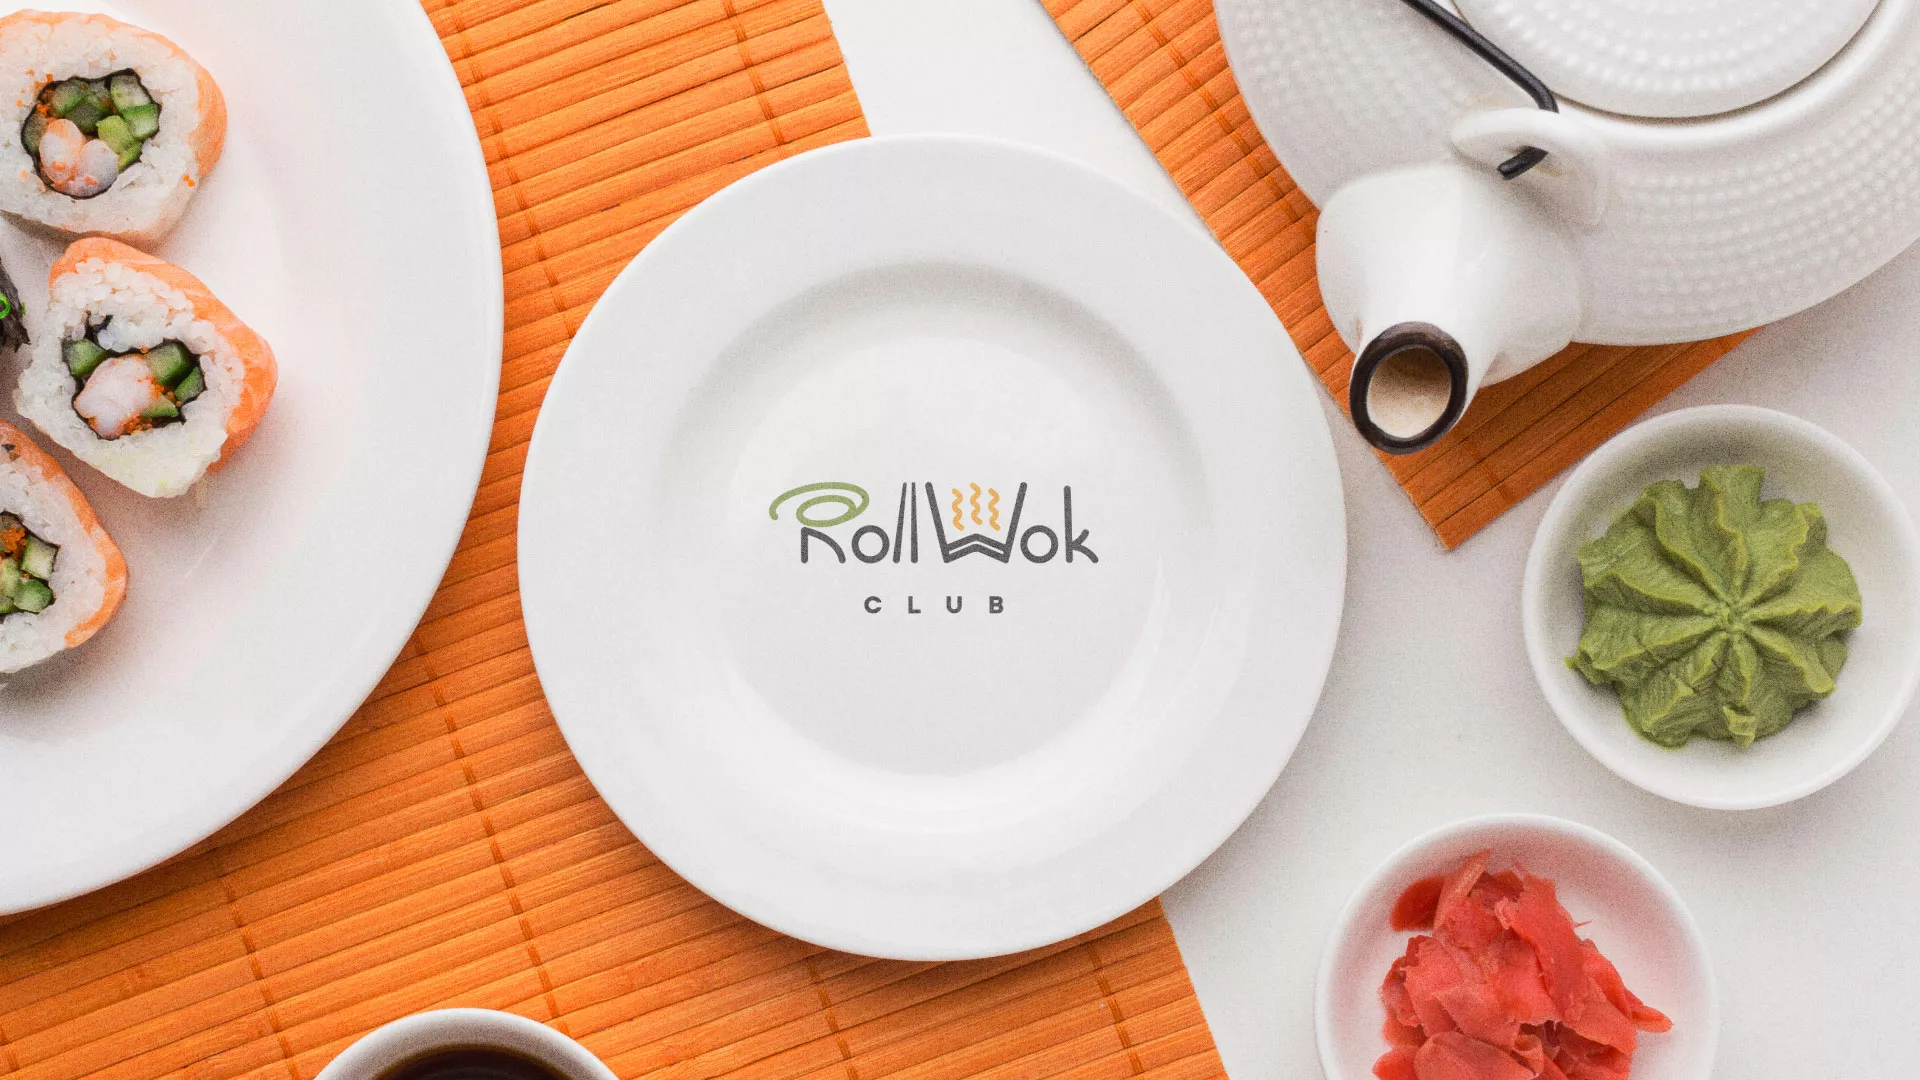 Разработка логотипа и фирменного стиля суши-бара «Roll Wok Club» в Котельниково